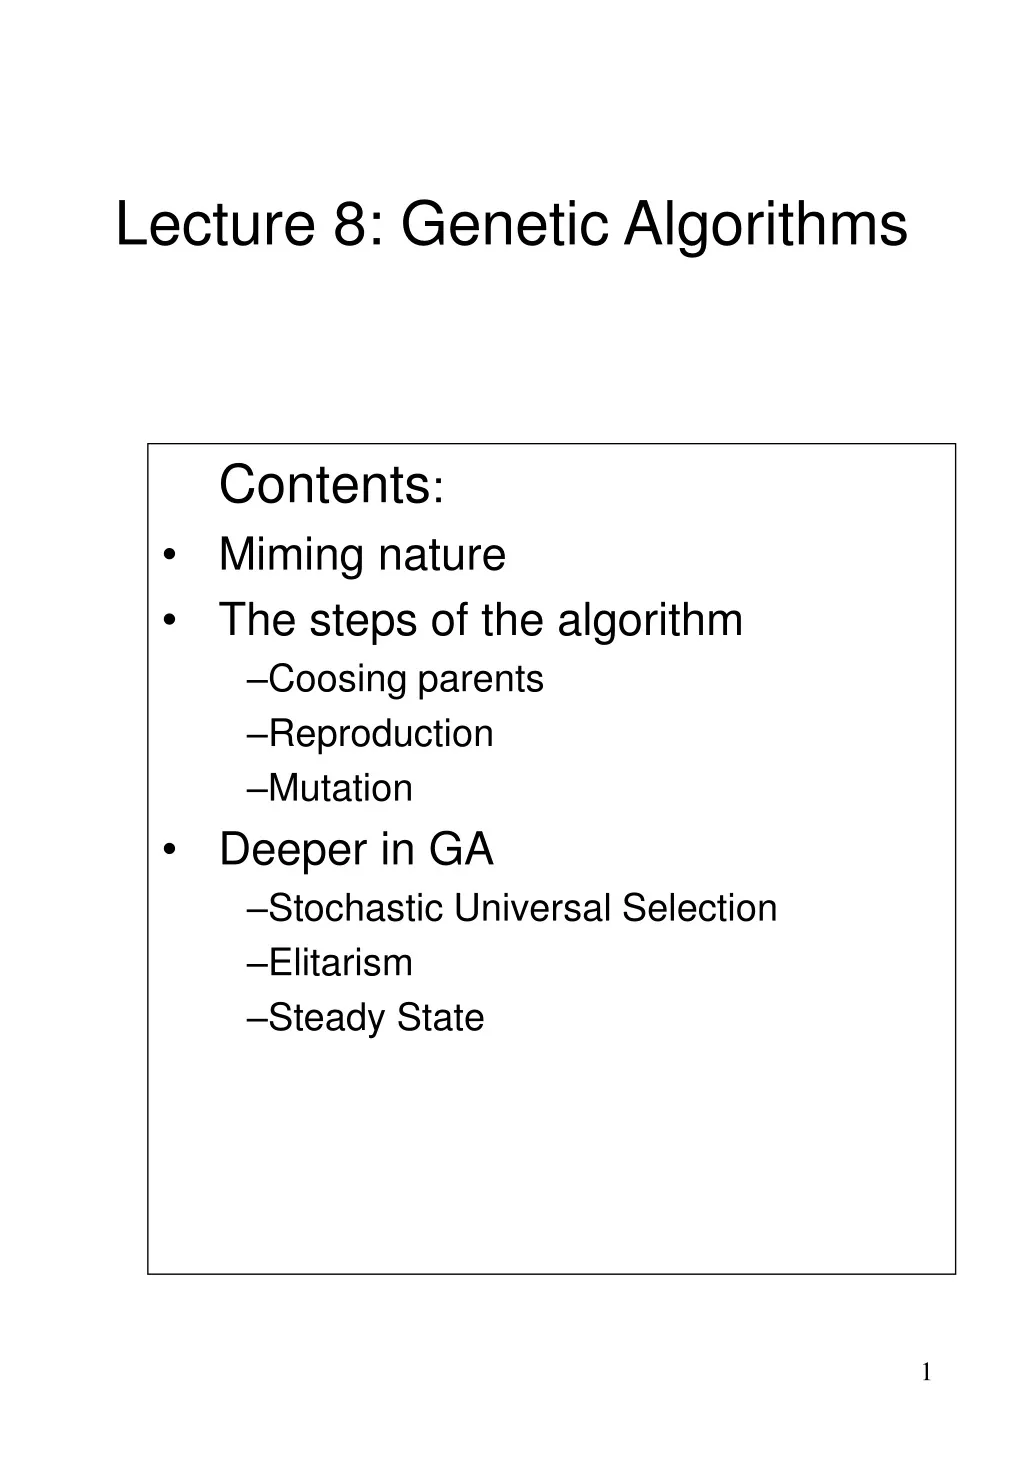 lecture 8 genetic algorithms